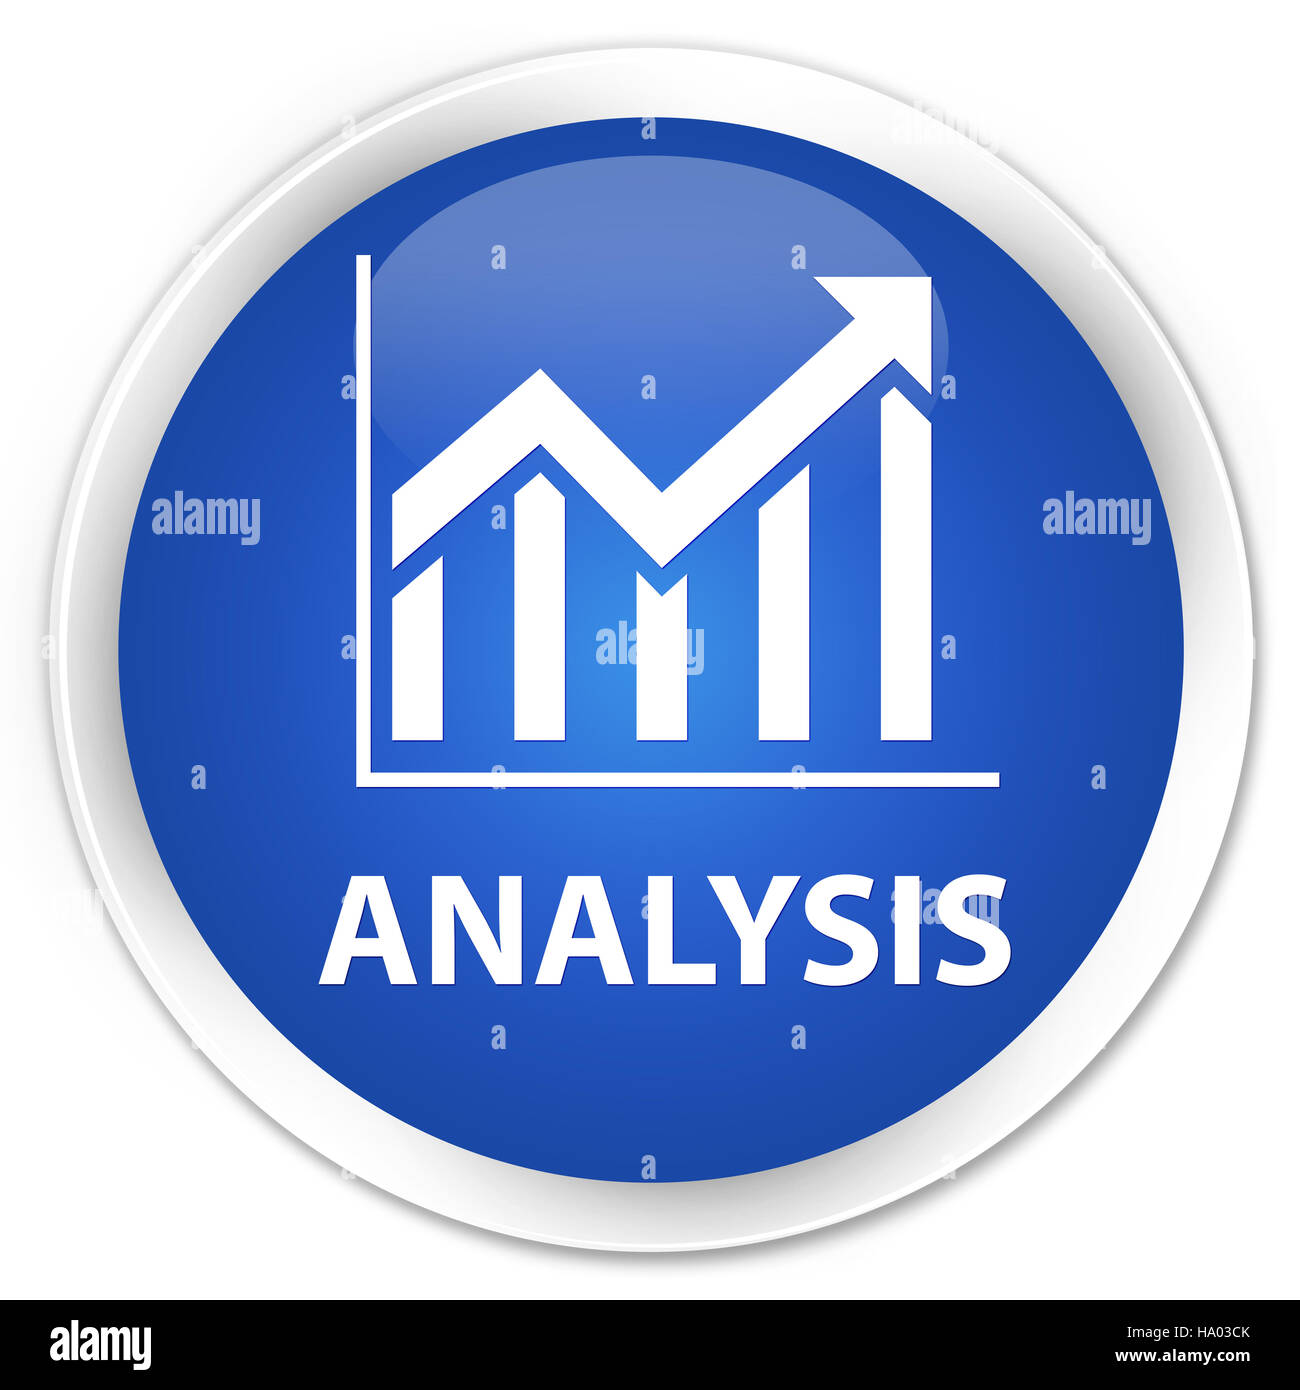 (Icône) Analyse statistique isolé sur le bouton rond bleu premium abstract illustration Banque D'Images